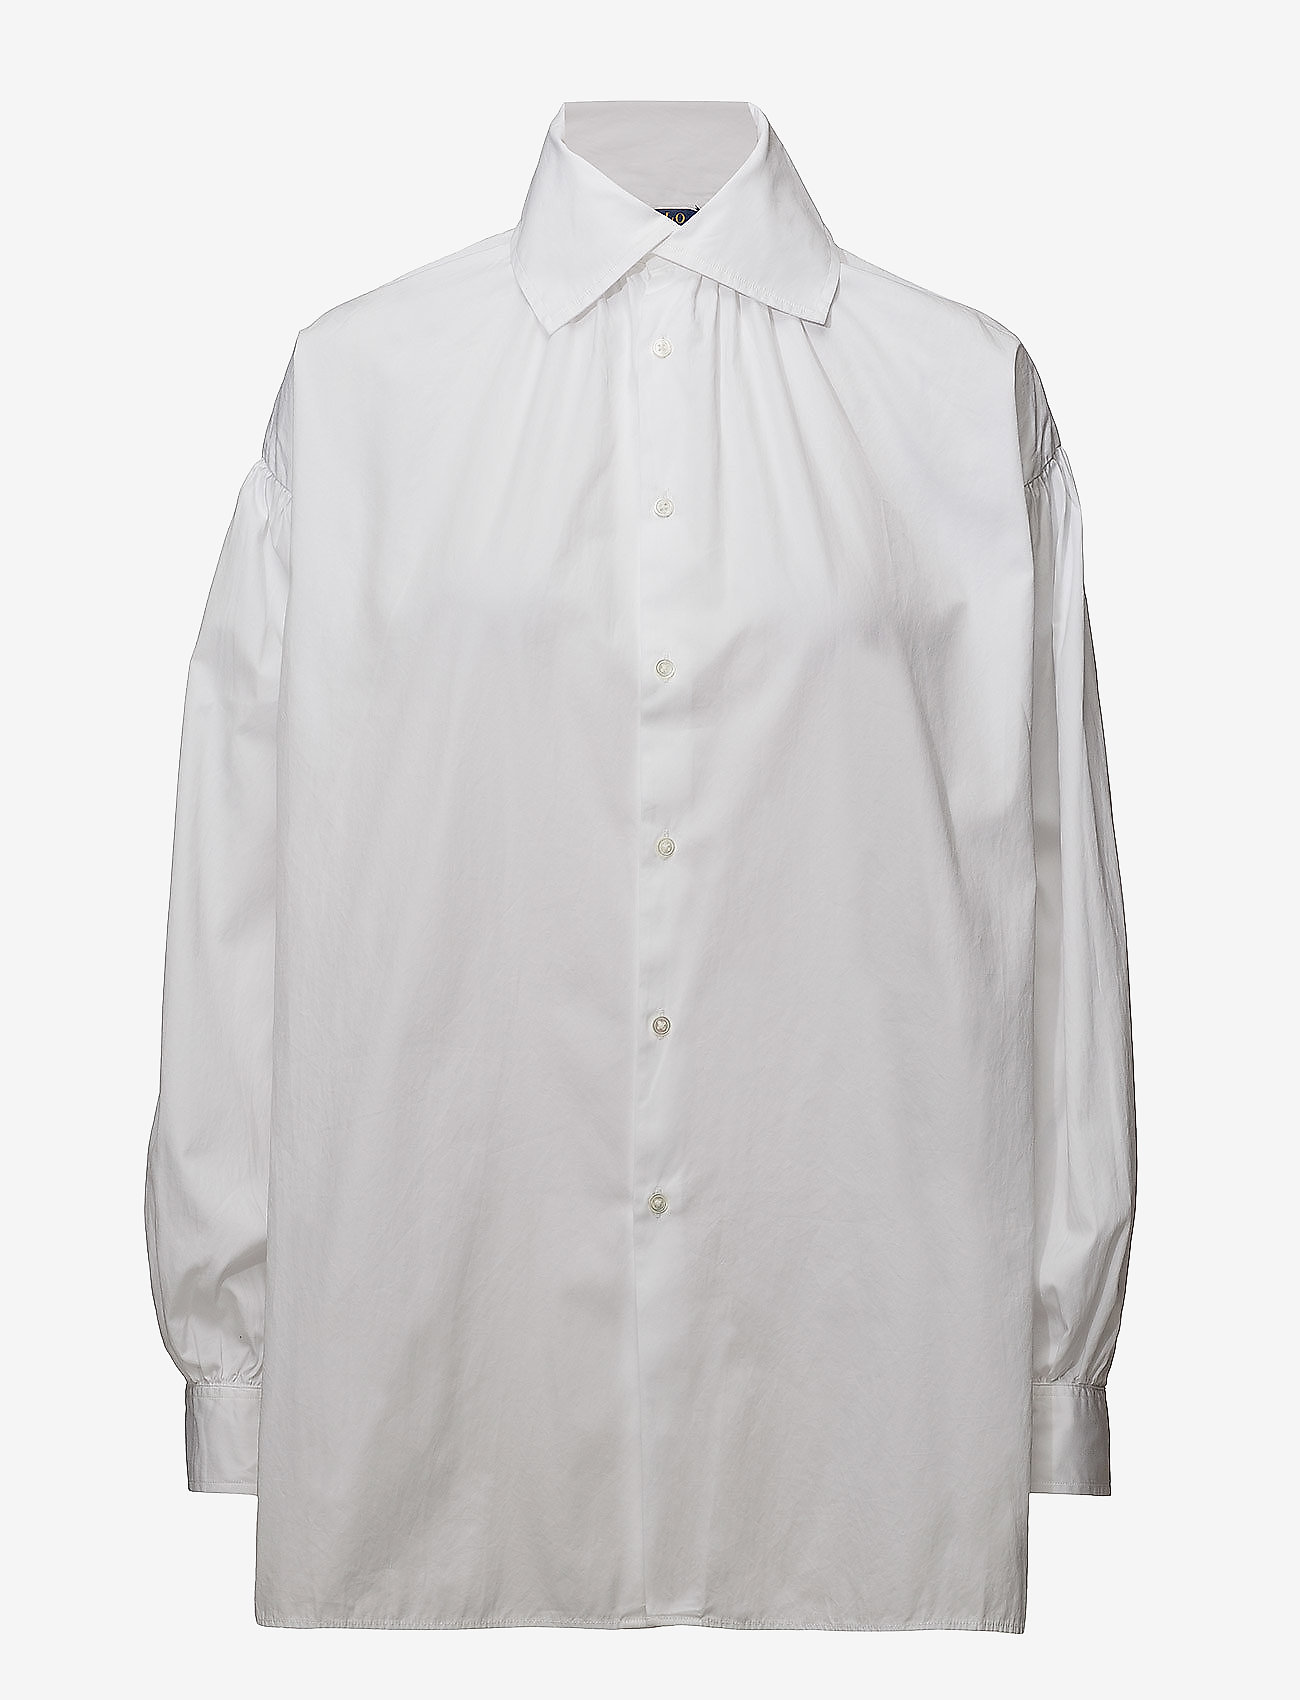 ralph lauren cotton button down shirt